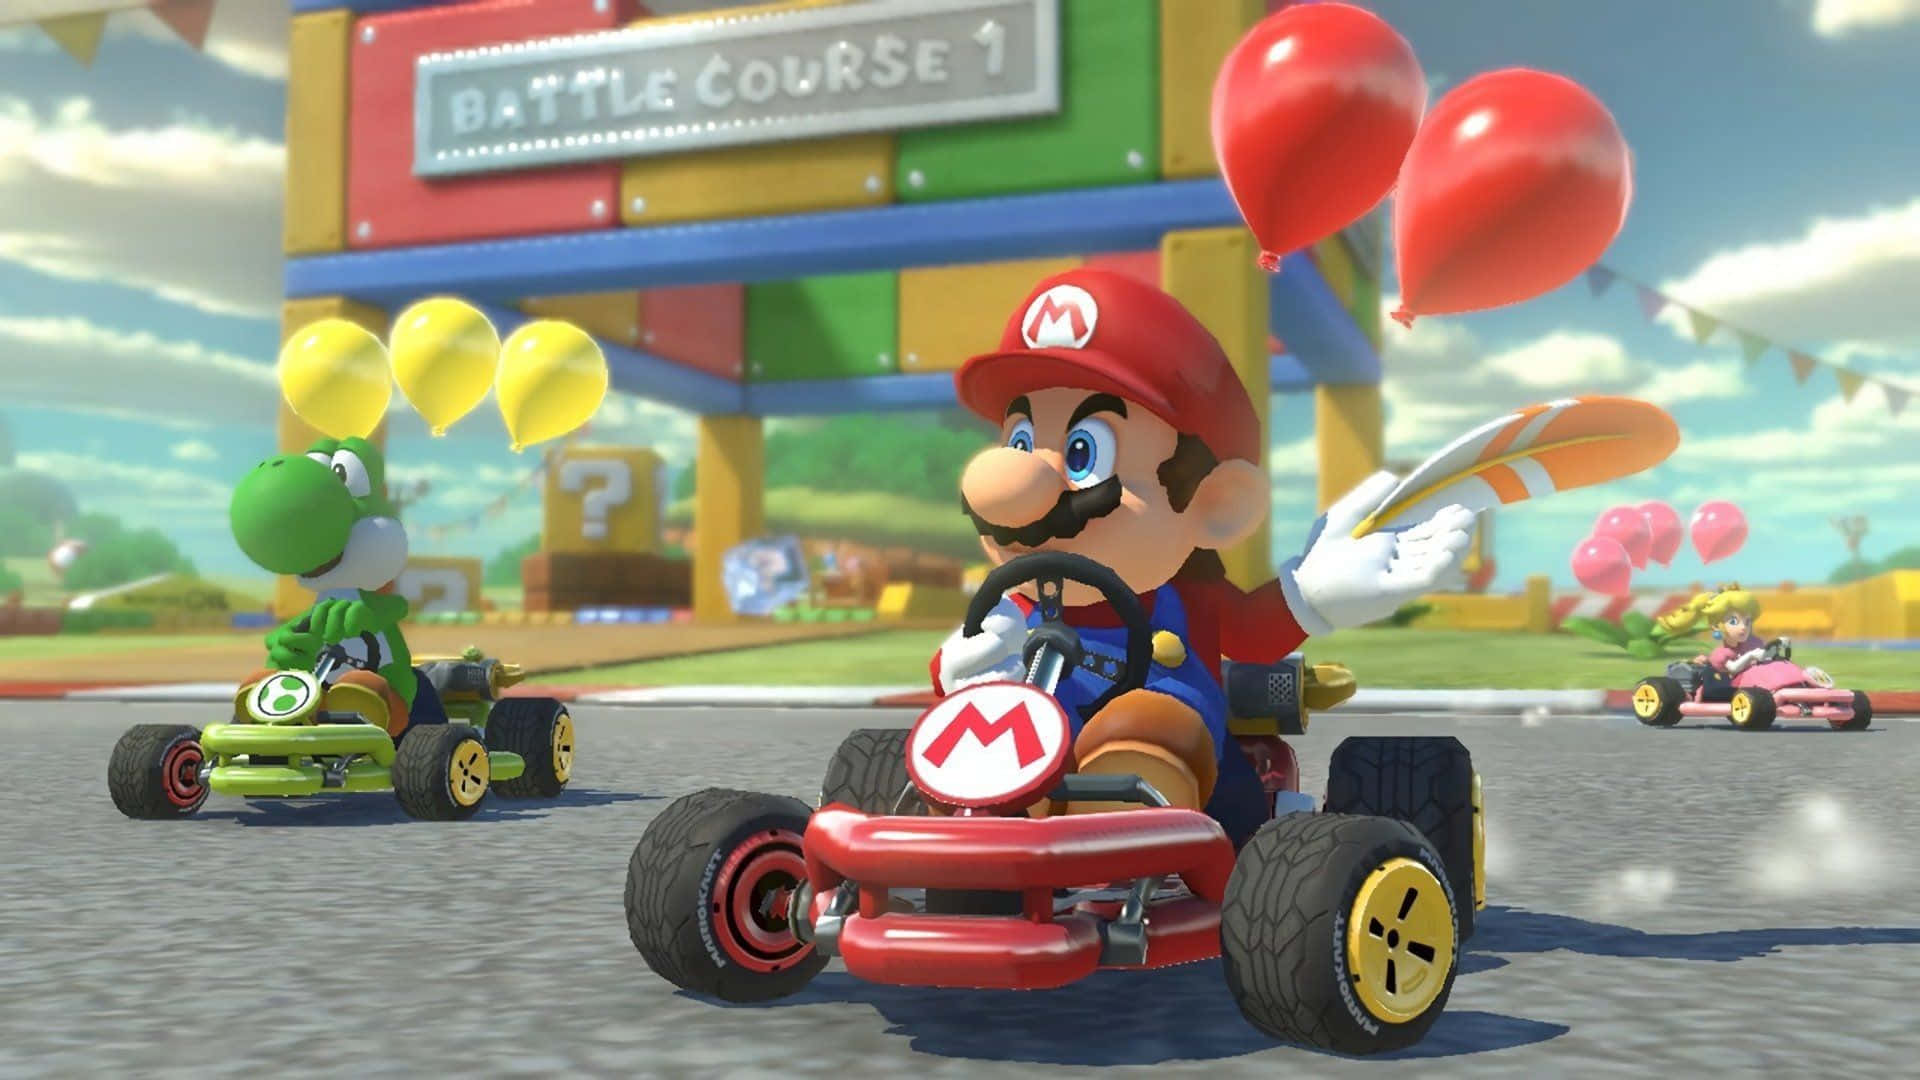 ¡preparados,listos, Ya! - ¡participa En La Emocionante Emoción De Carreras De Mario Kart!